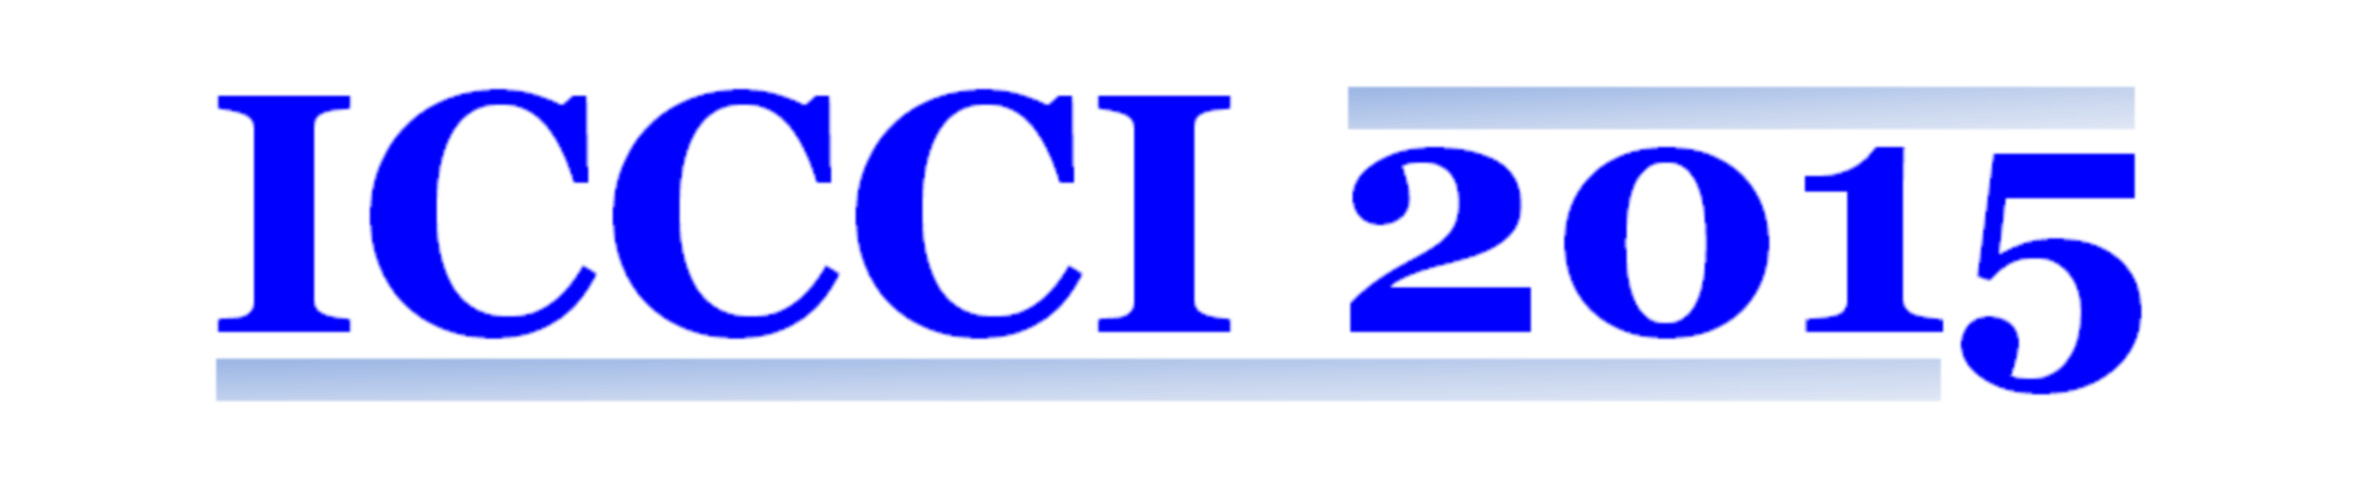 ICCCI2015 